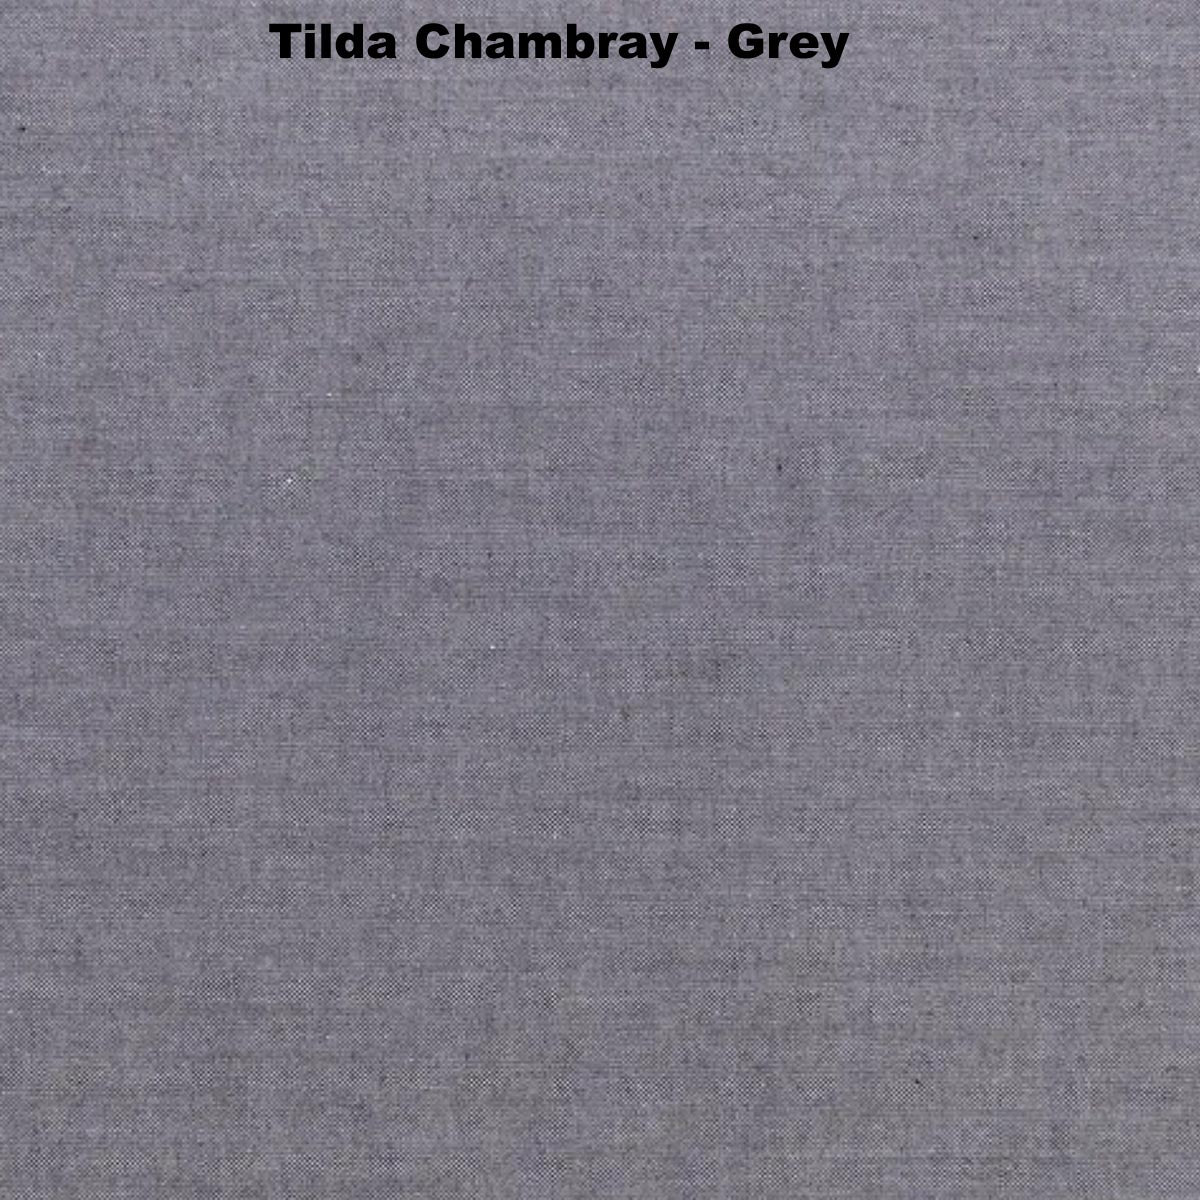 Tilda Chambray - Grey #160006